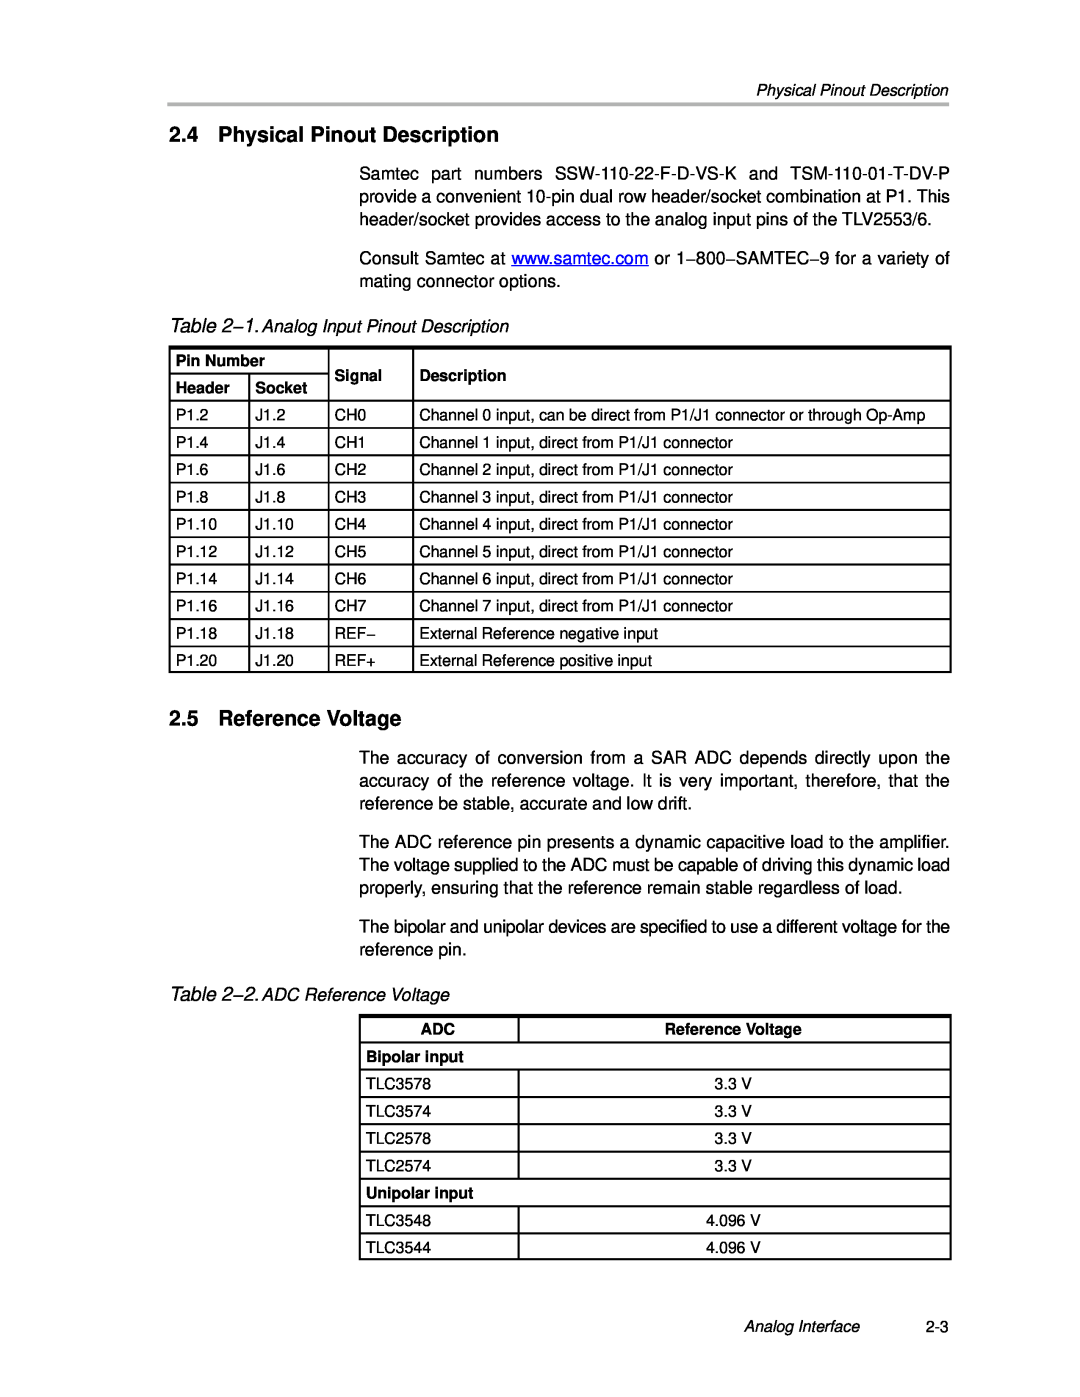 Texas Instruments TLC3578EVM manual Physical Pinout Description, Reference Voltage, 1. Analog Input Pinout Description 